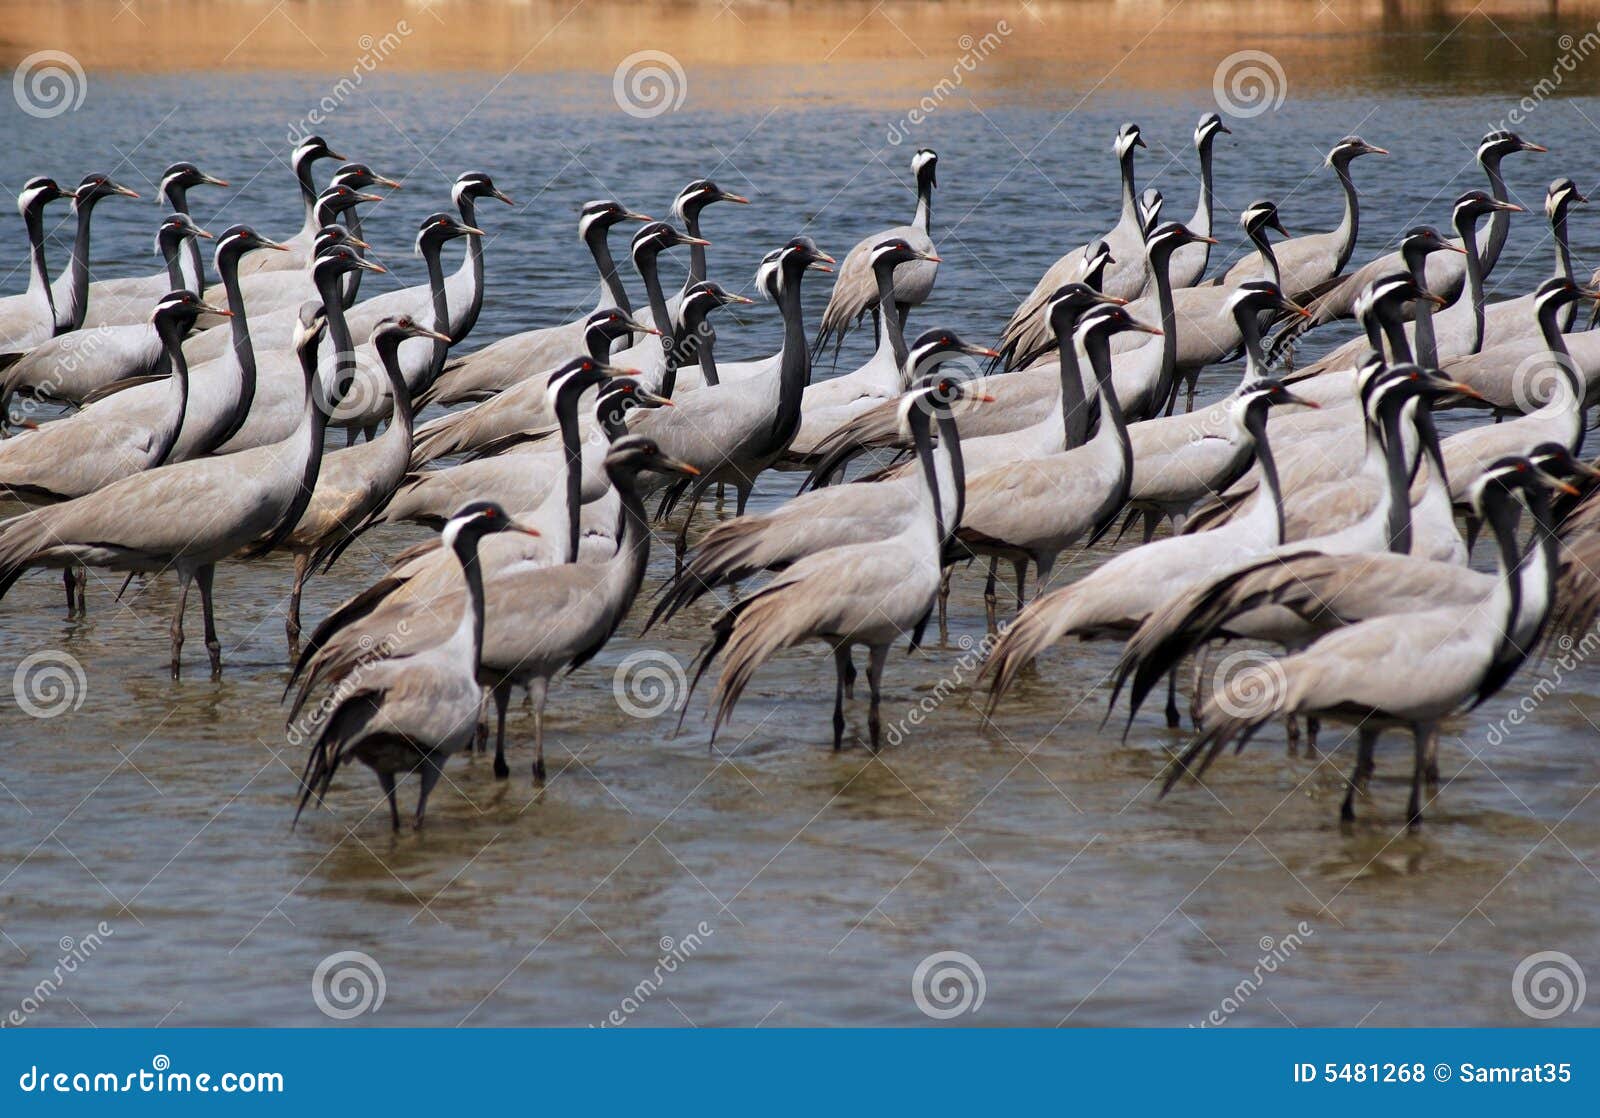 flock of migratory birds.